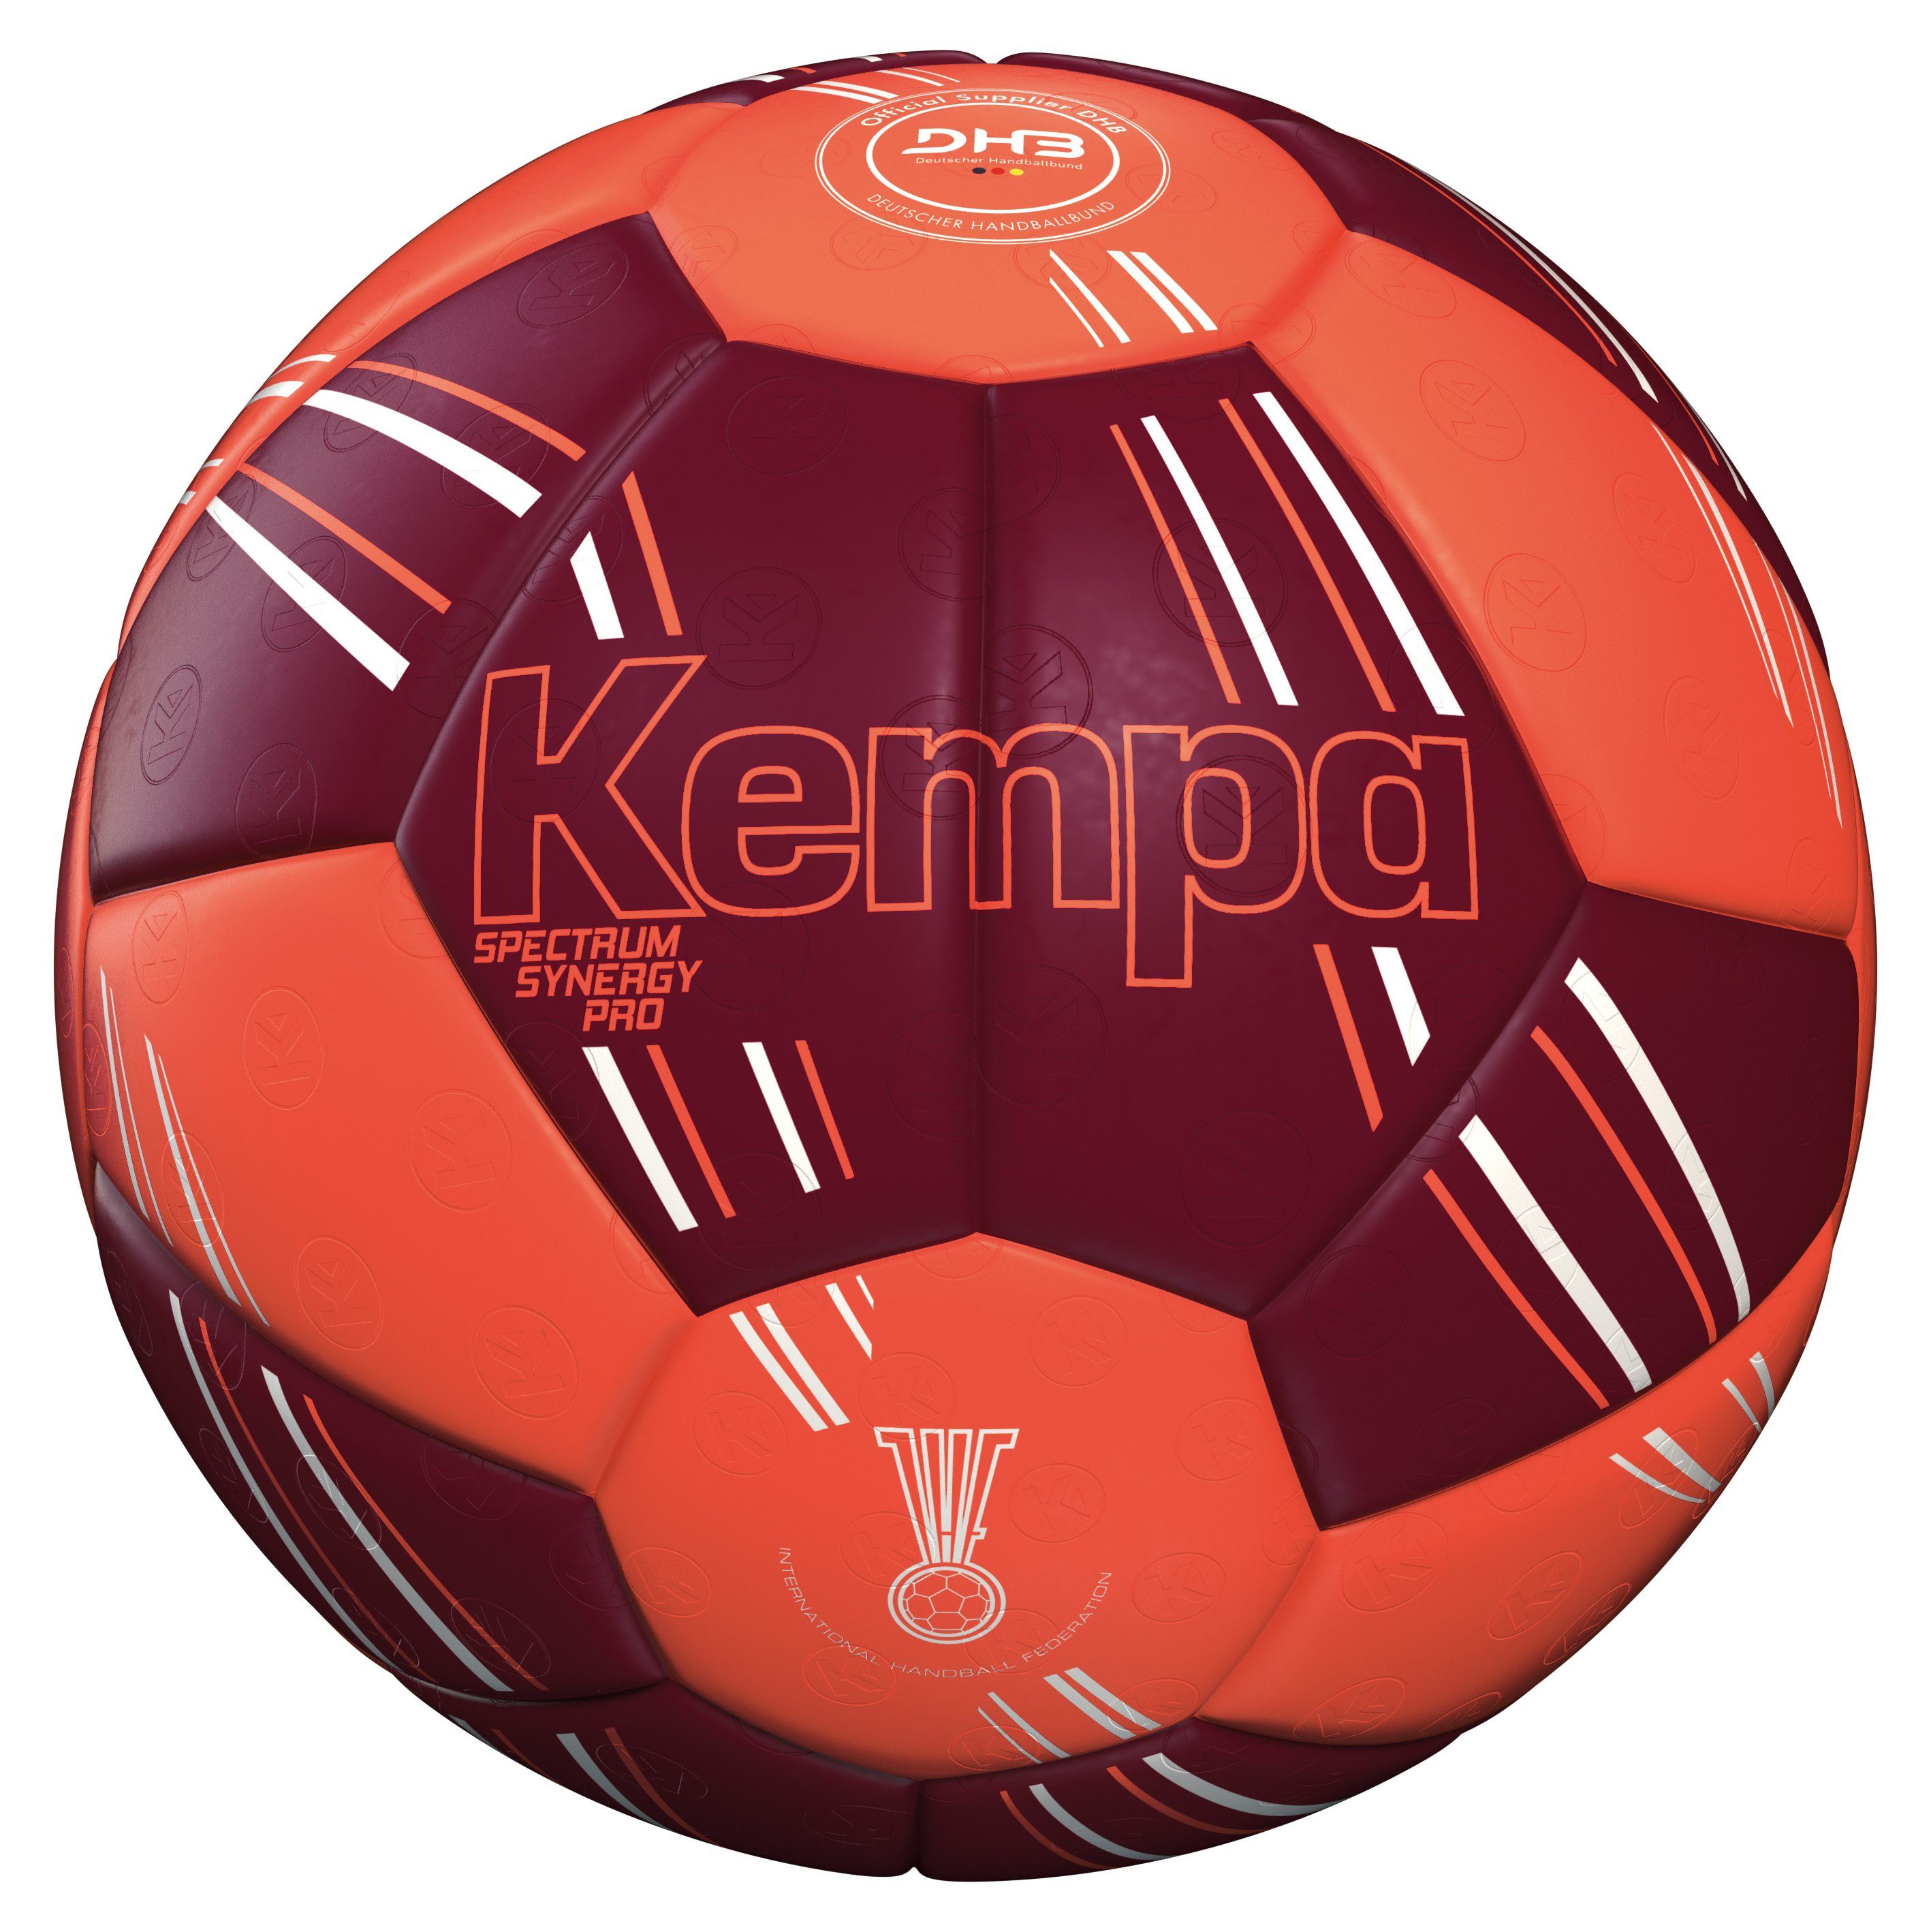 Kempa Kempa SPECTRUM SYNERGY Handball PRO Handball